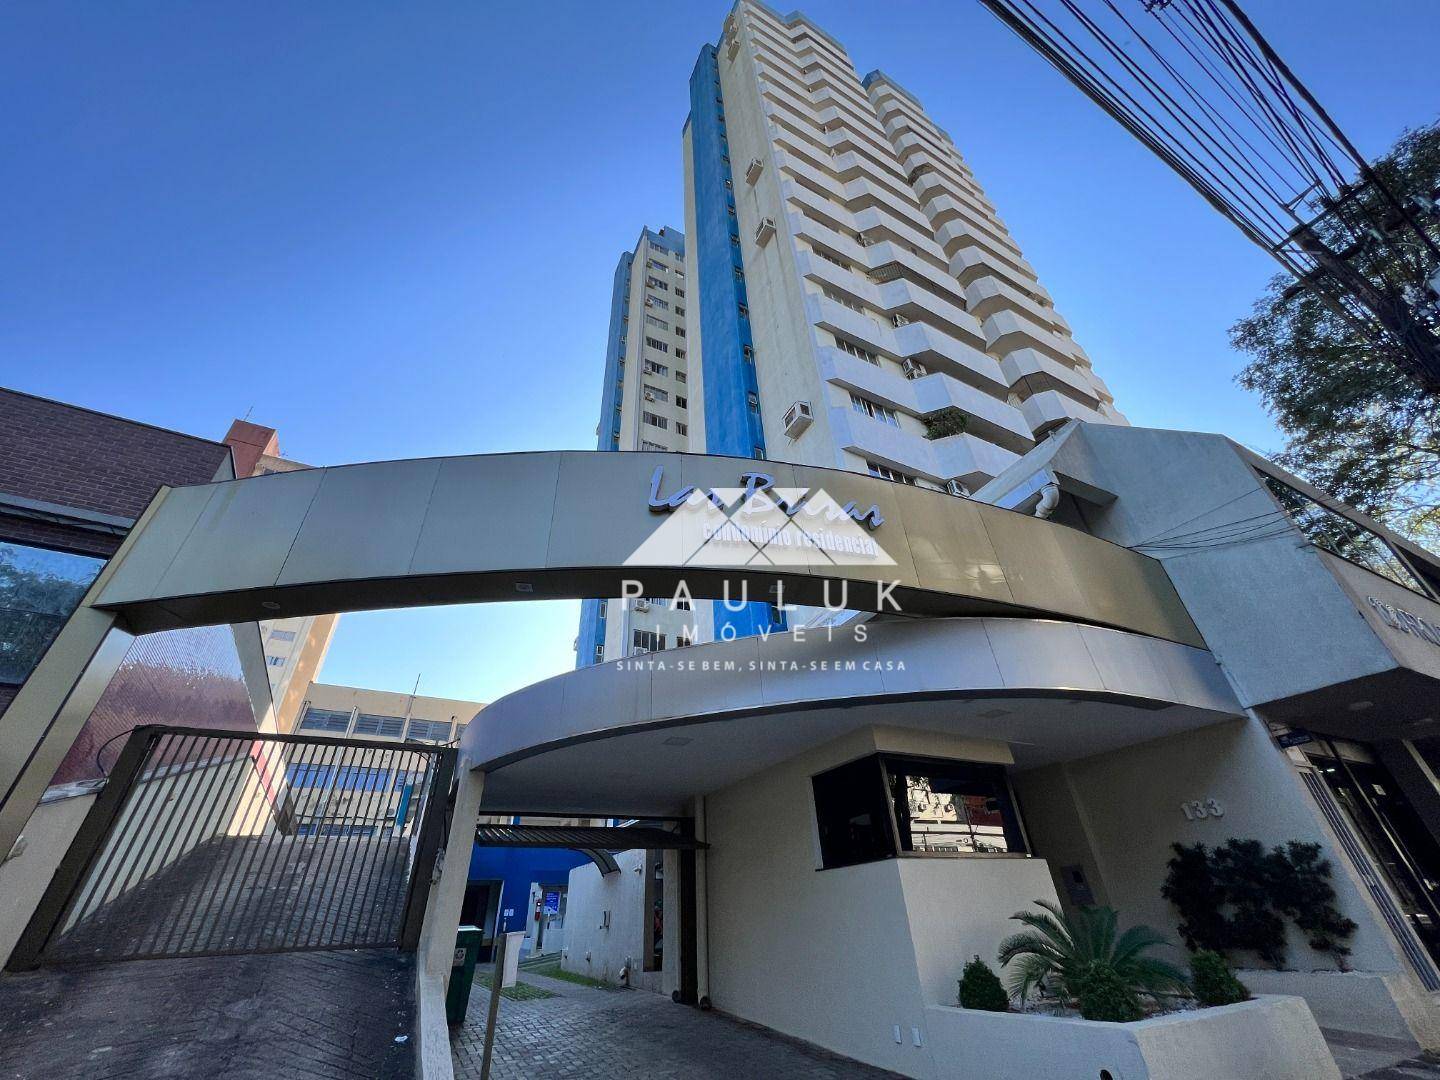 Apartamento com 3 Dormitórios Sendo 1 Suíte à venda Por R$ 430.000 - Edifício Las Brisas - Foz do Ig | PAULUK IMÓVEIS | Portal OBusca